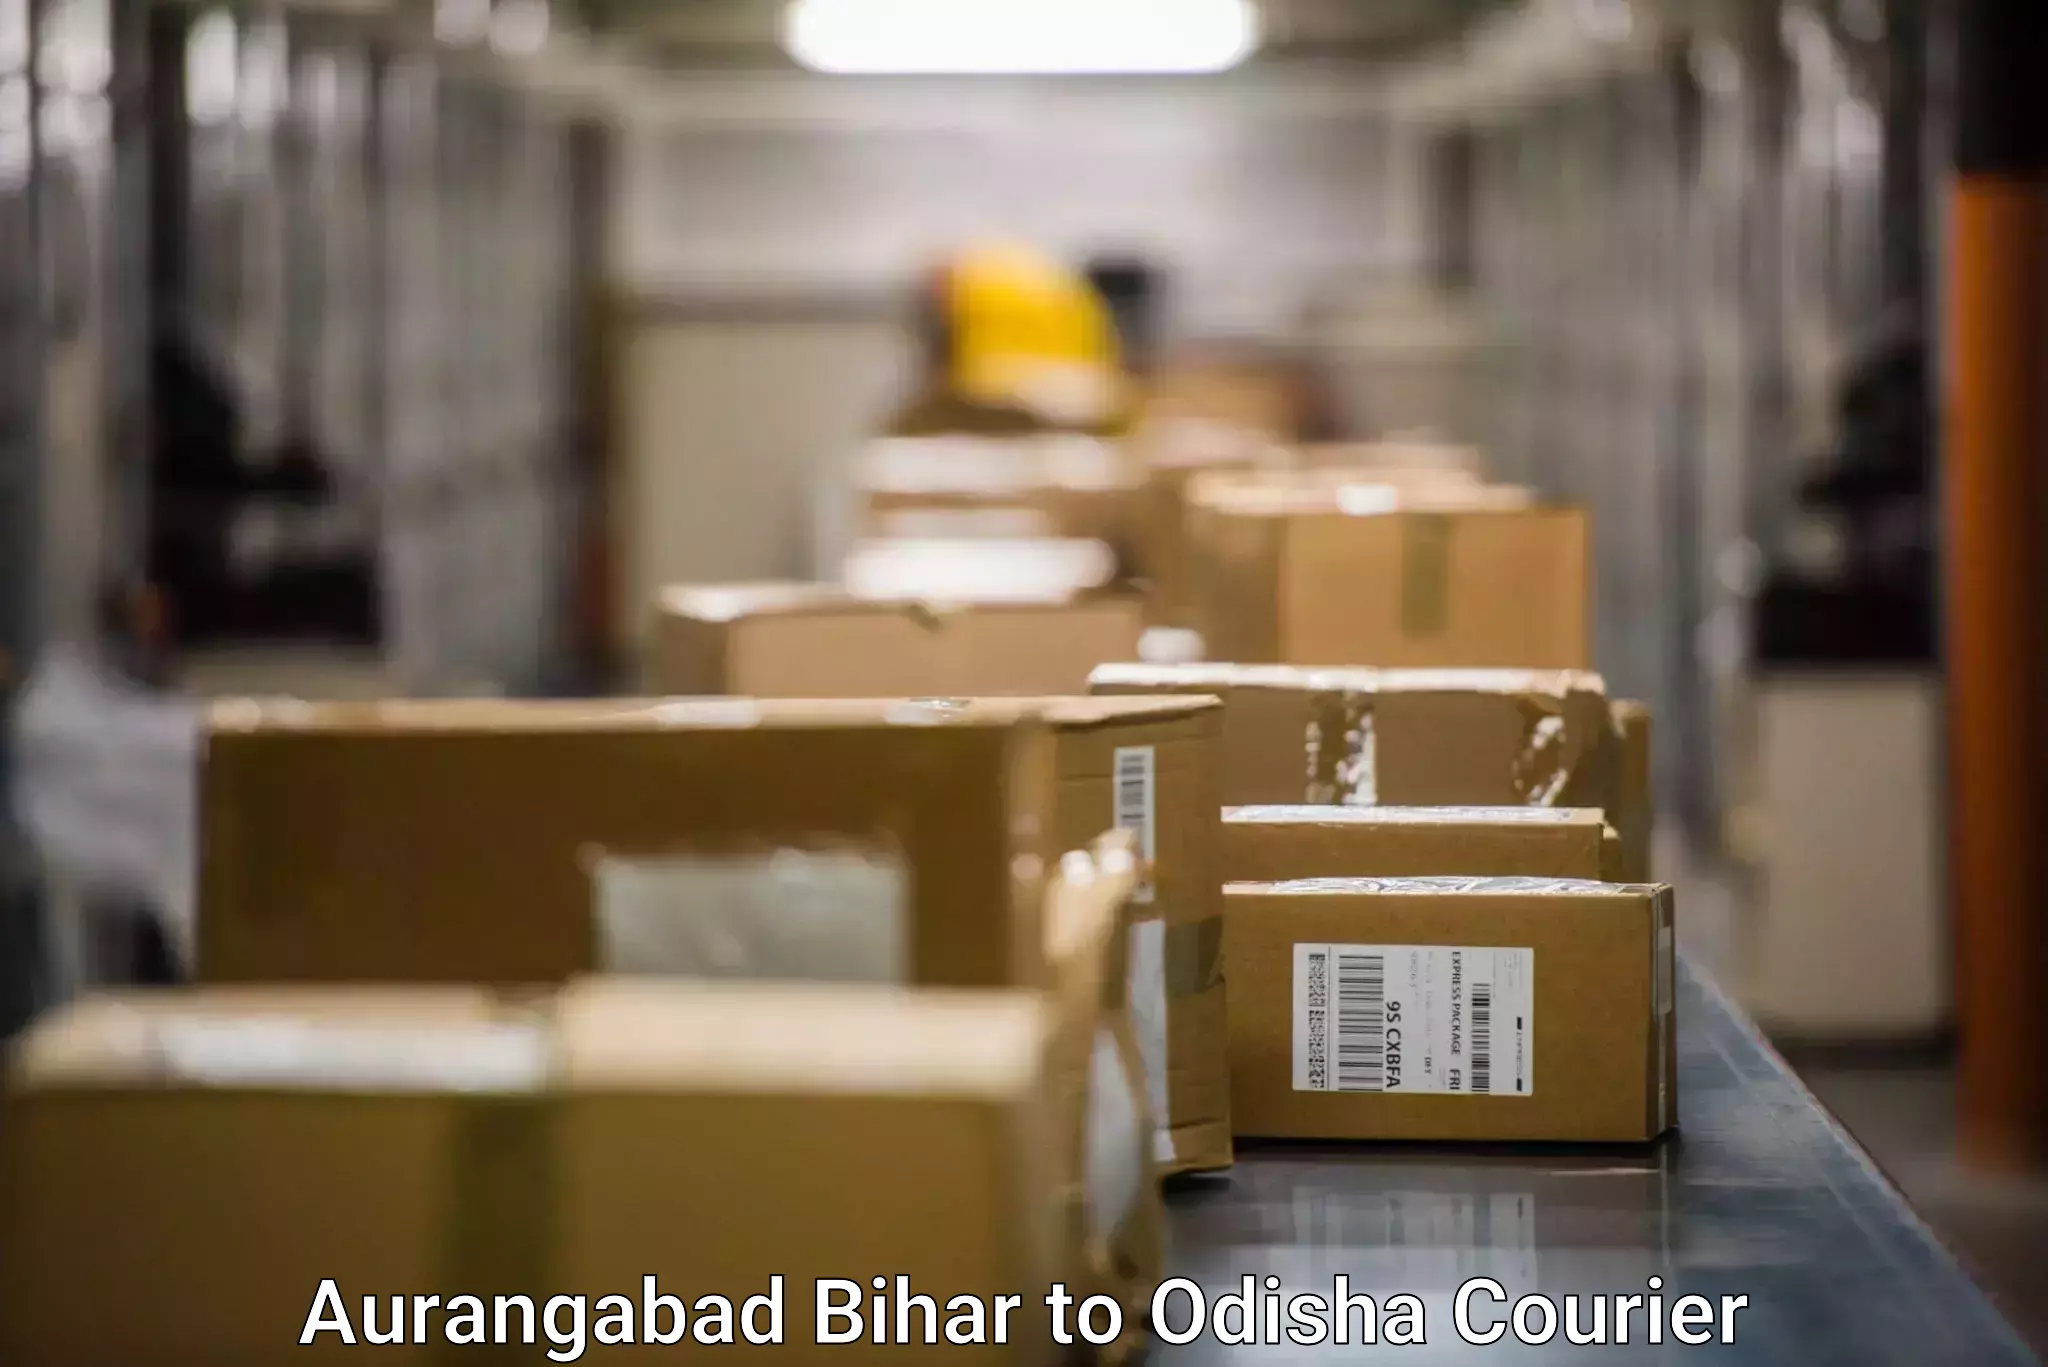 Quick courier services Aurangabad Bihar to Bahalda